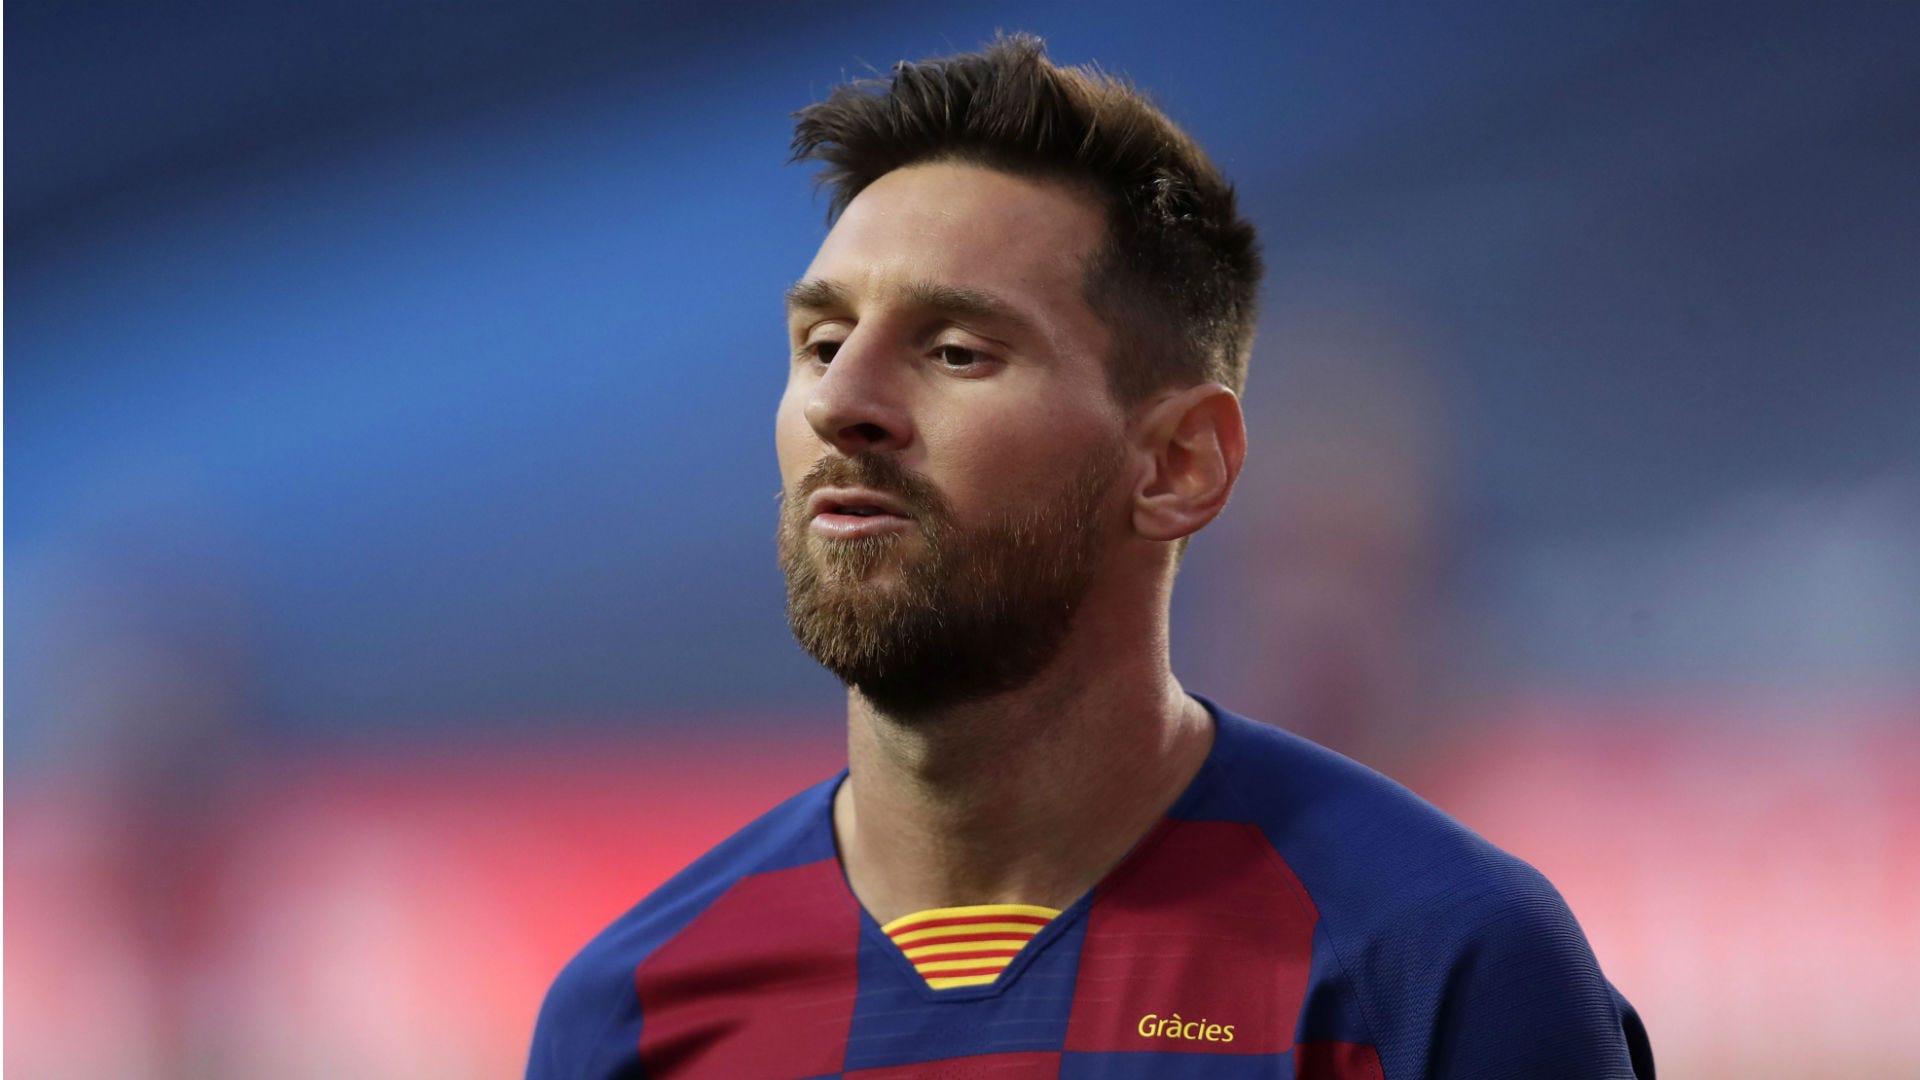 Với việc chuyển nhượng của PSG và Messi, chắc chắn sẽ có nhiều điều thú vị đang chờ đợi chúng ta. Hãy xem ảnh về Messi trong đội PSG để trả lời câu hỏi liệu anh sẽ tiếp tục toả sáng được như ở Barca hay không.